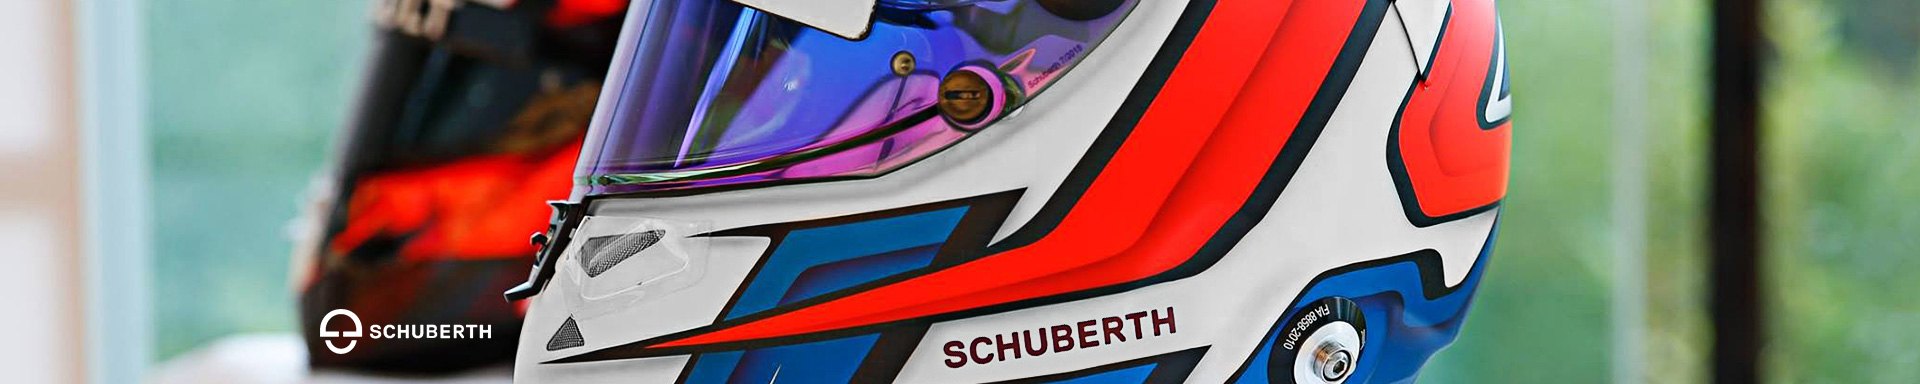 Schuberth Open Face Helmets